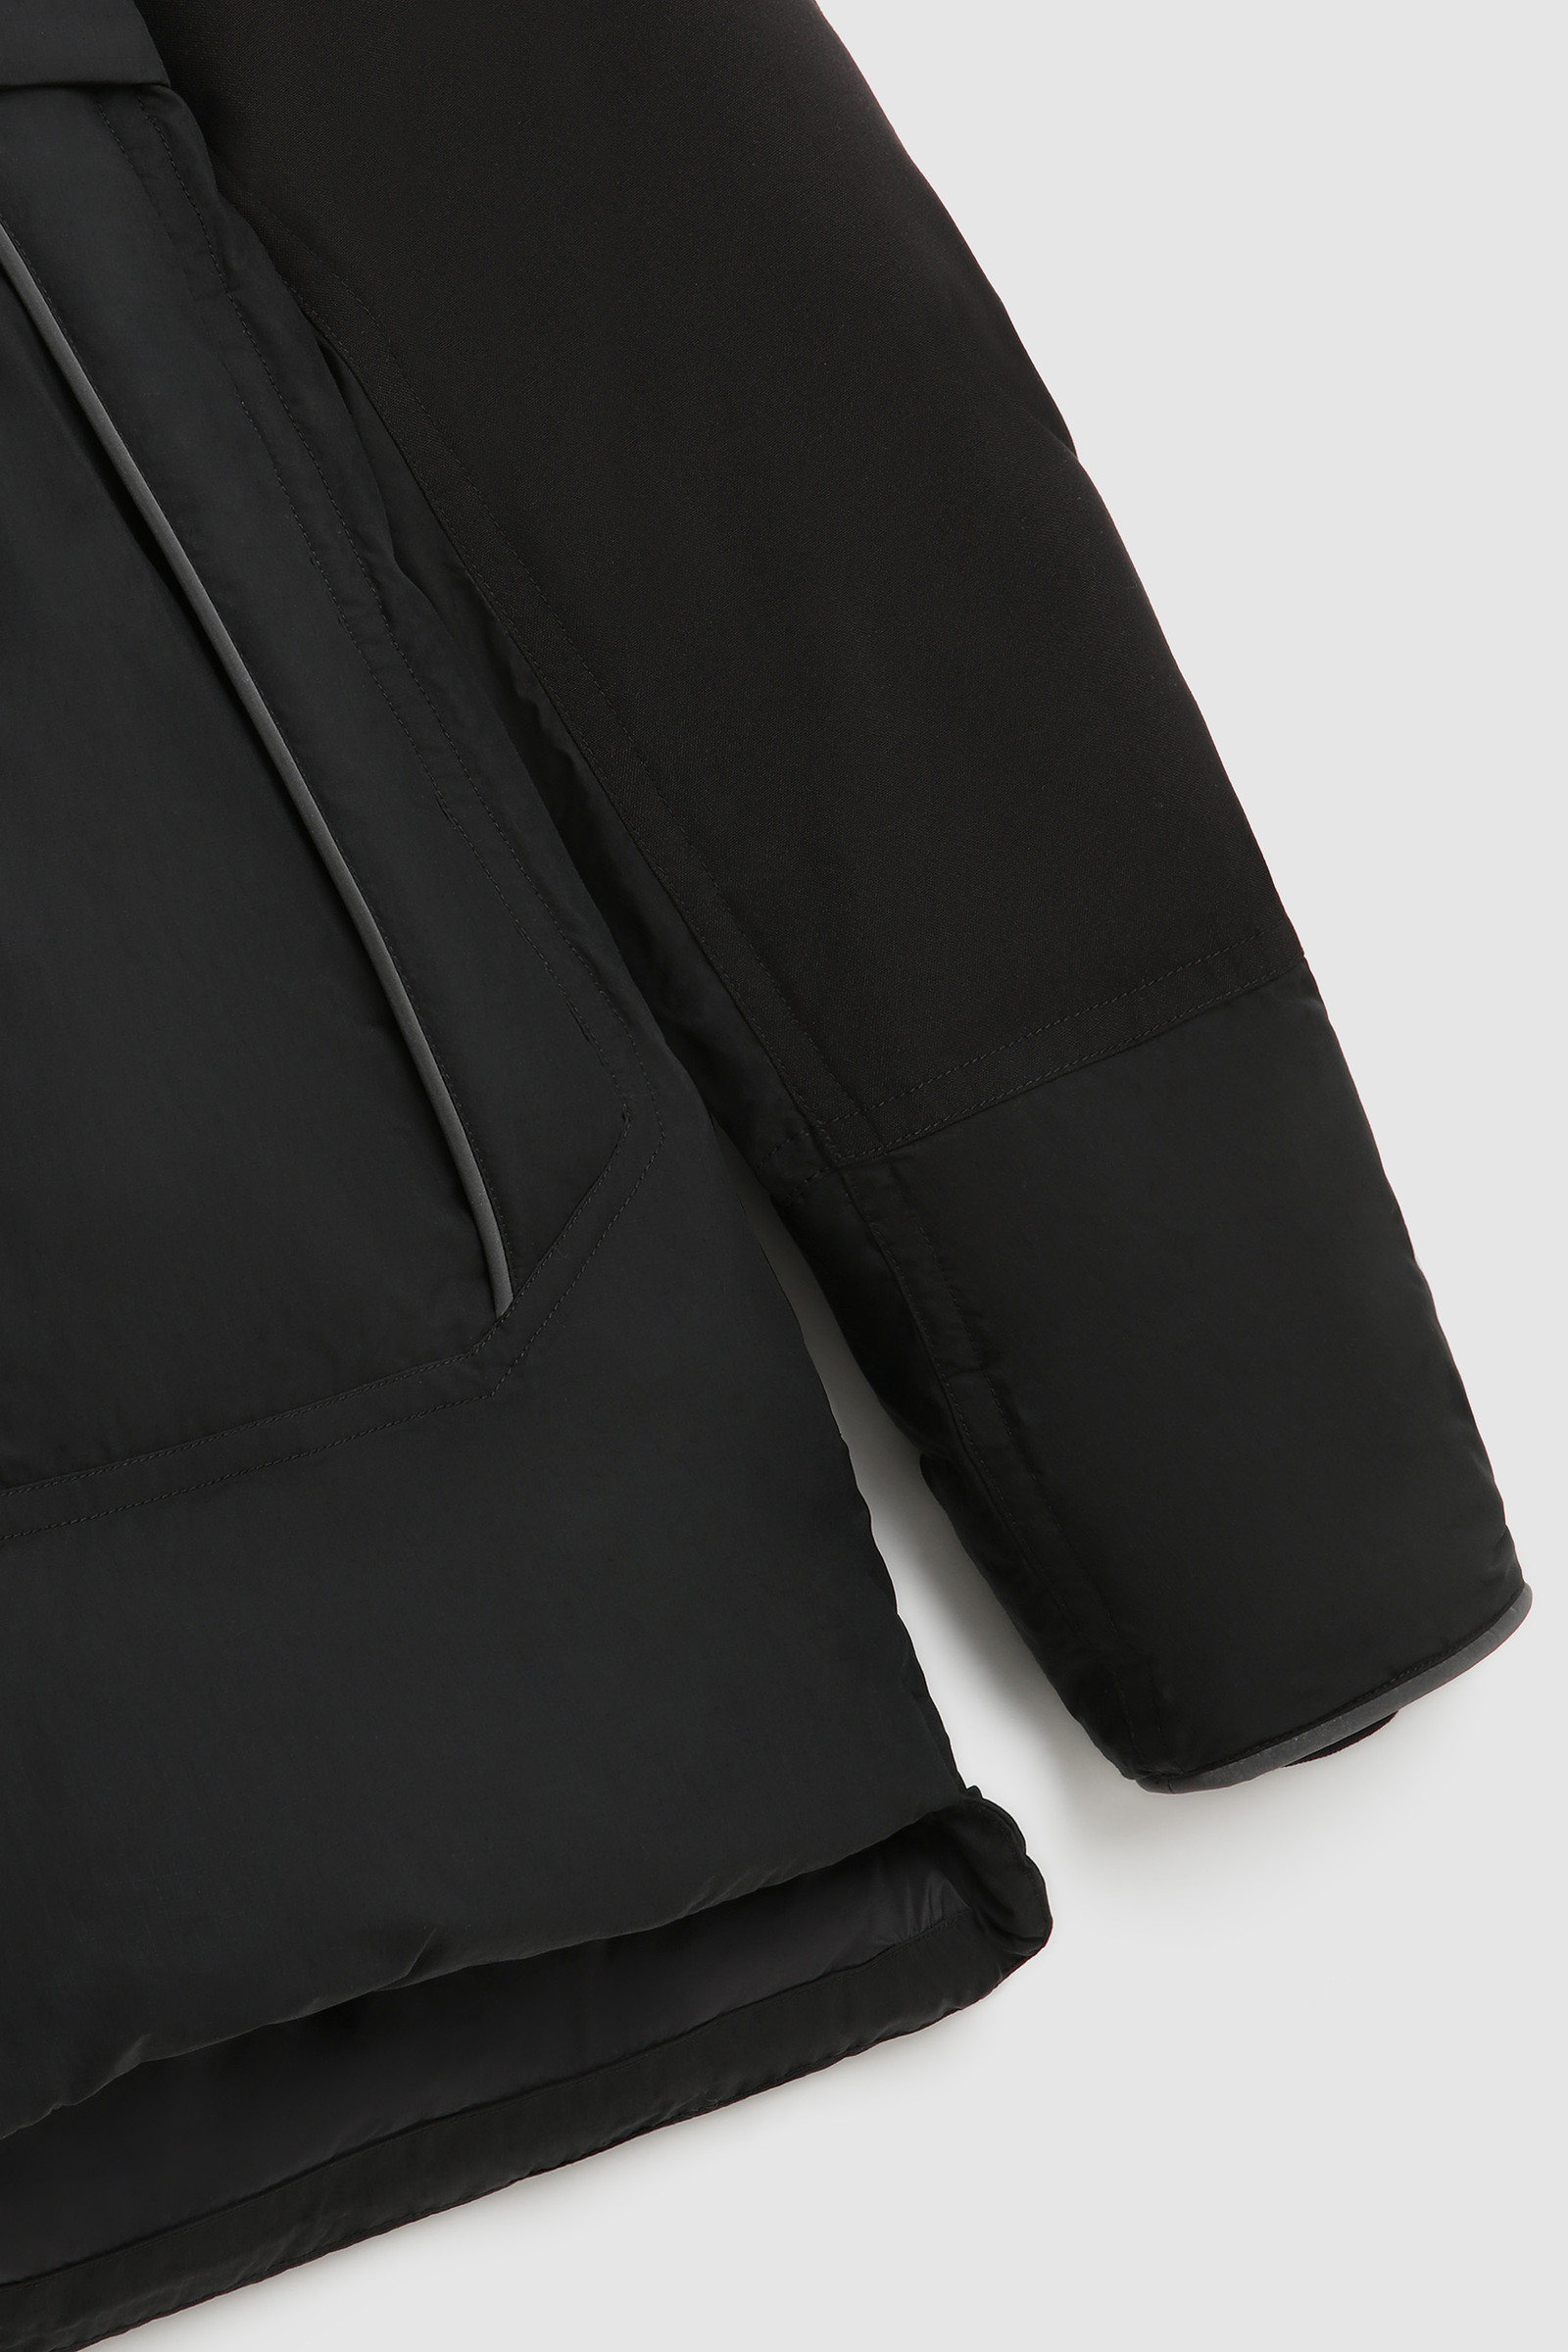 Teton Padded Jacket in Ripstop Cotton - Men - Black